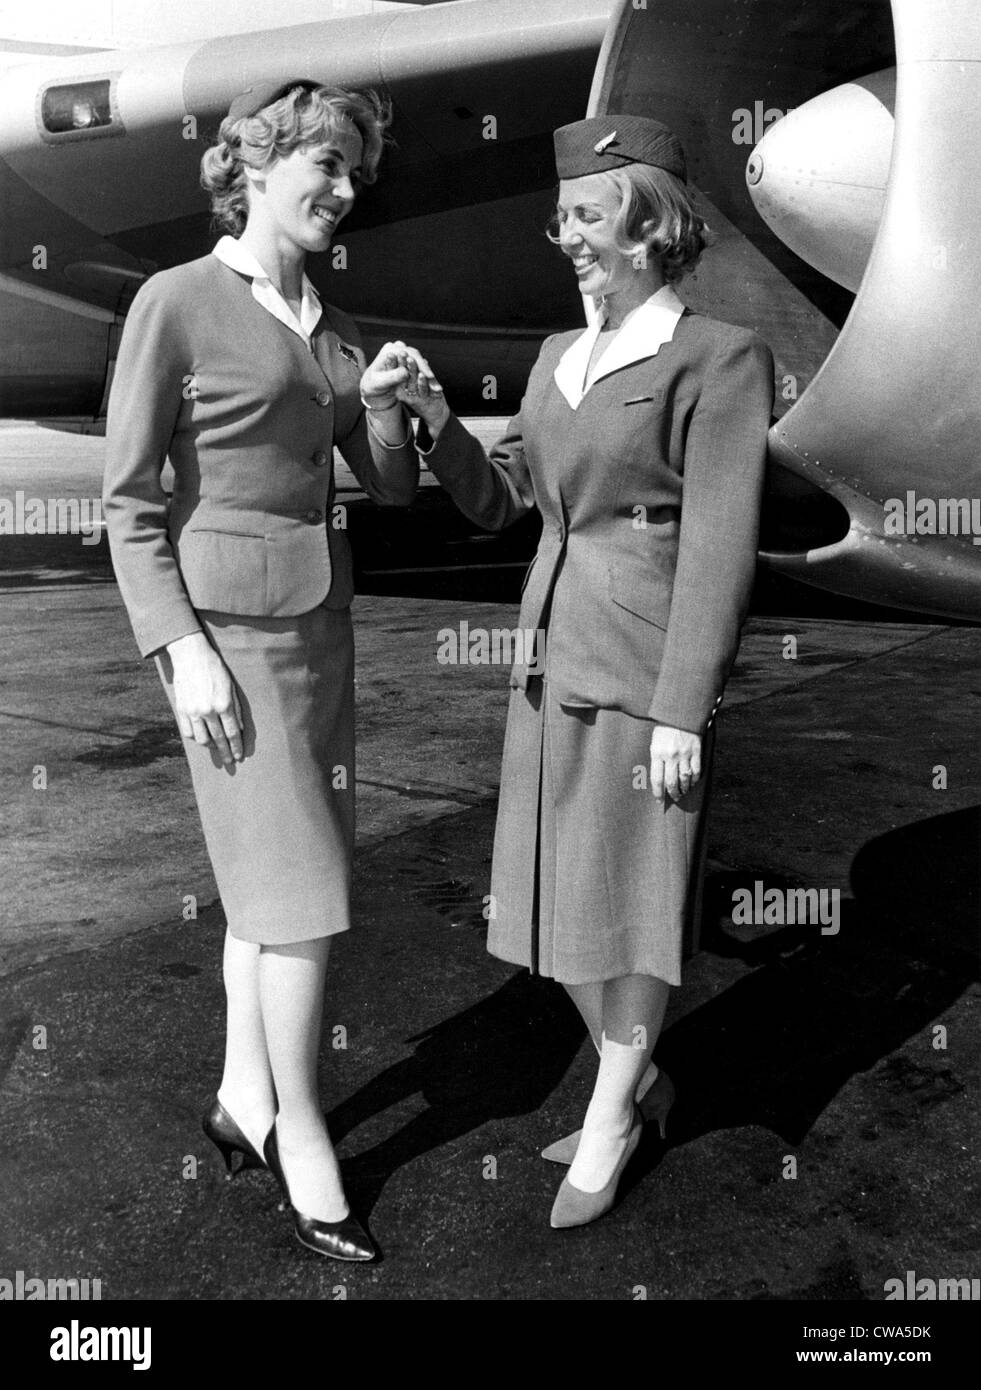 (UAL) United Air Lines hôtesses en 1963.. Avec la permission de la CSU : Archives / Everett Collection Banque D'Images